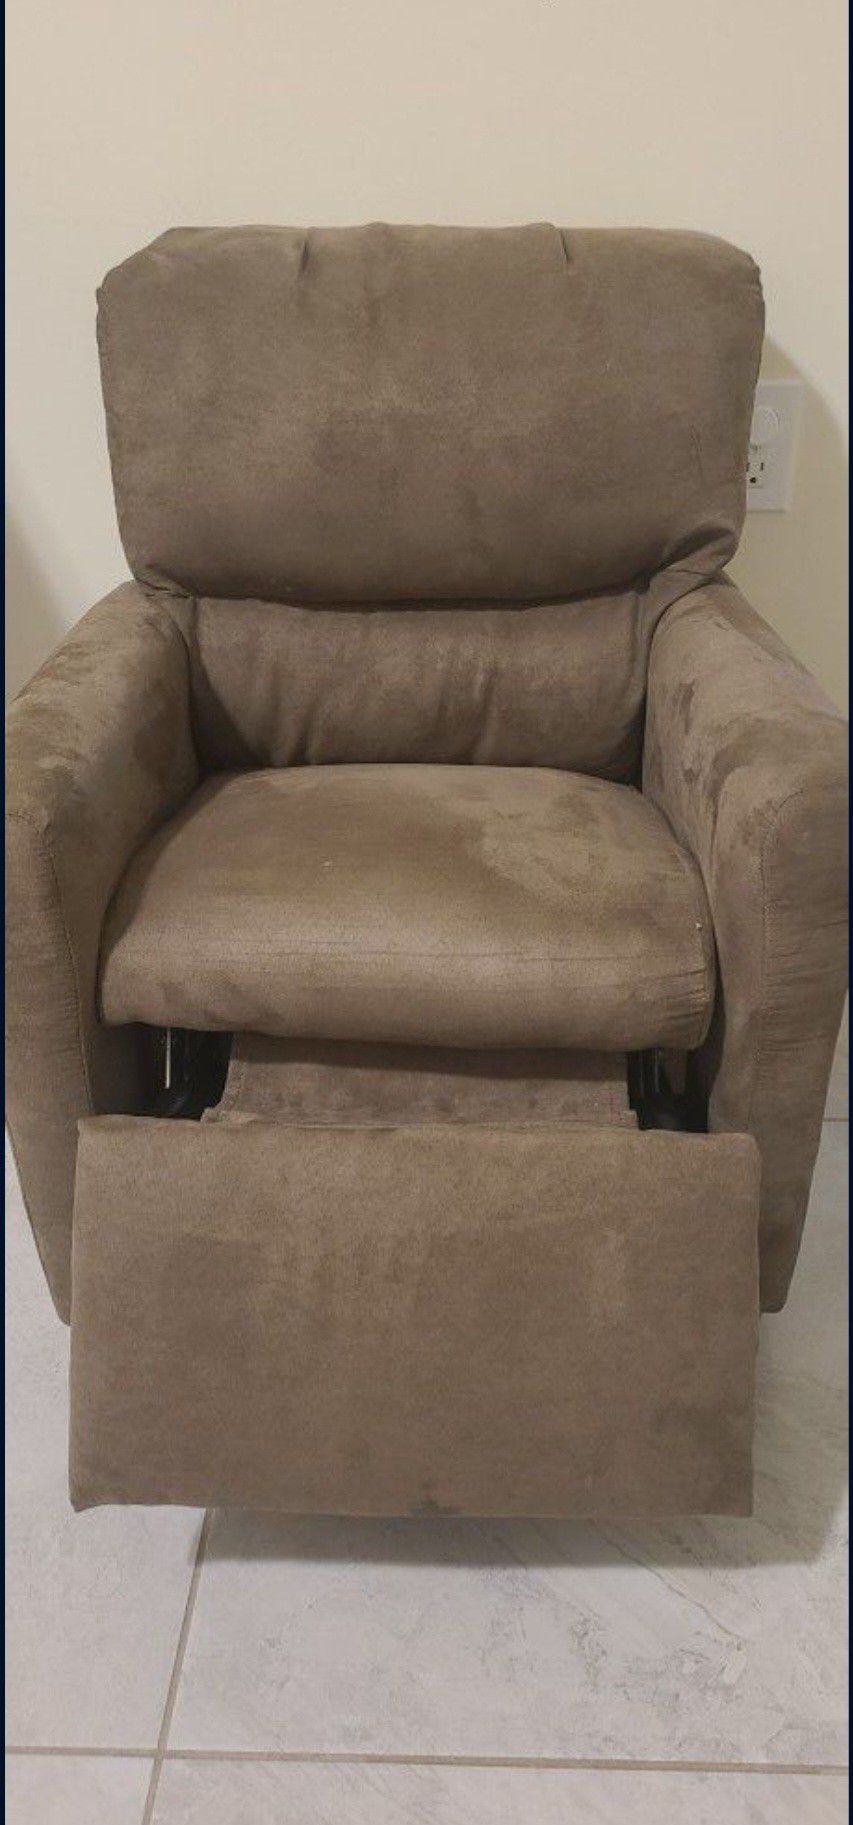 Toddler Recliner Chair 